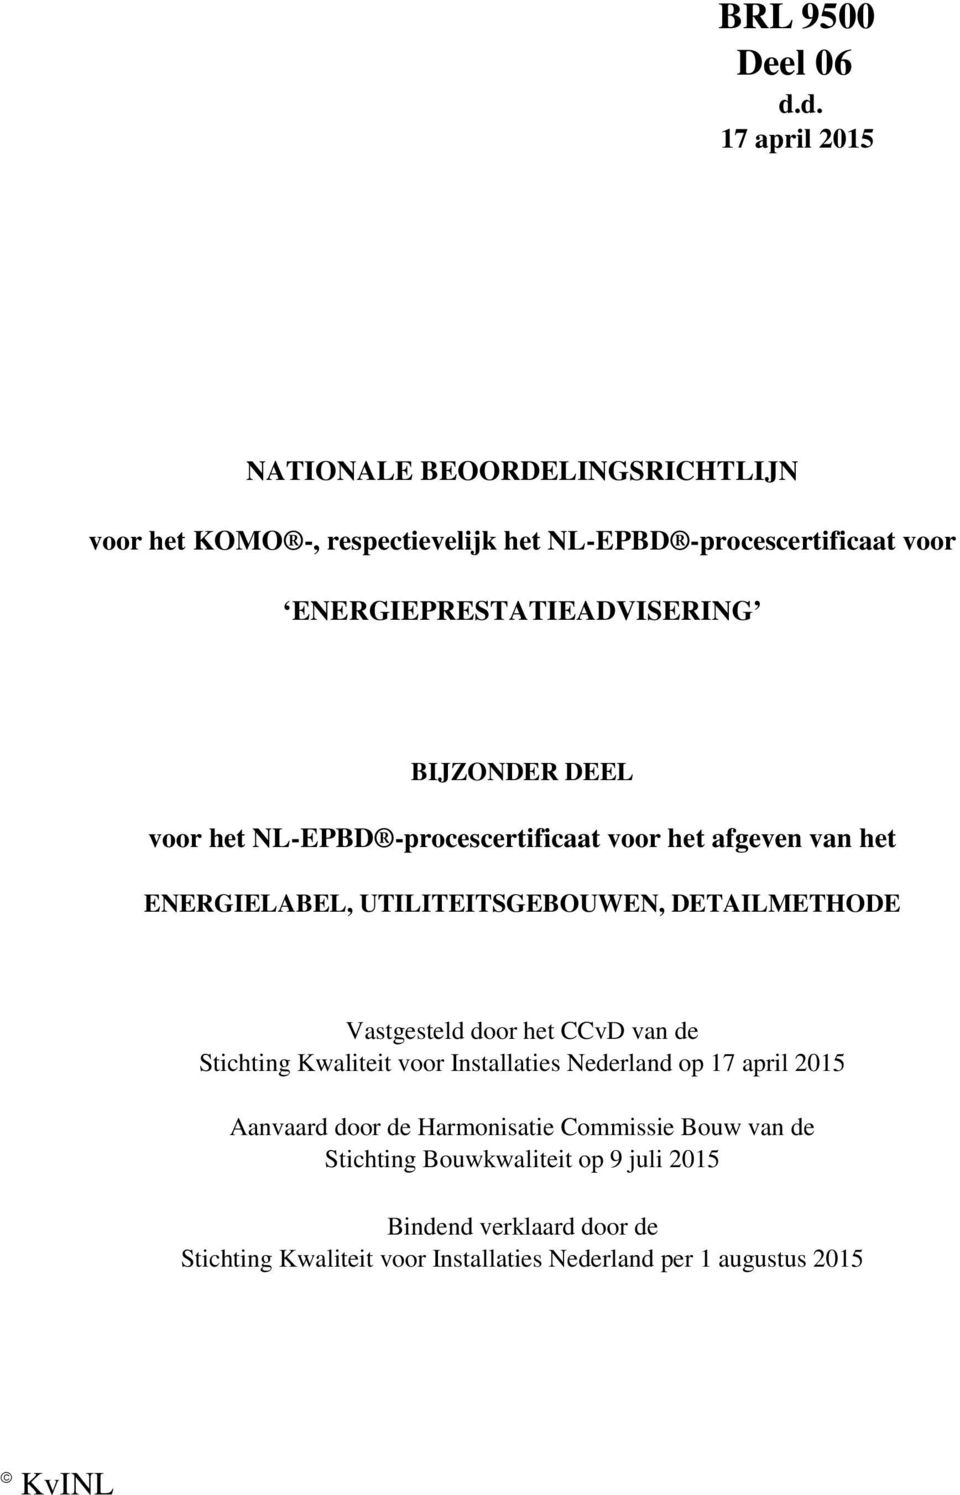 ENERGIEPRESTATIEADVISERING voor het NL-EPBD -procescertificaat voor het afgeven van het Vastgesteld door het CCvD van de